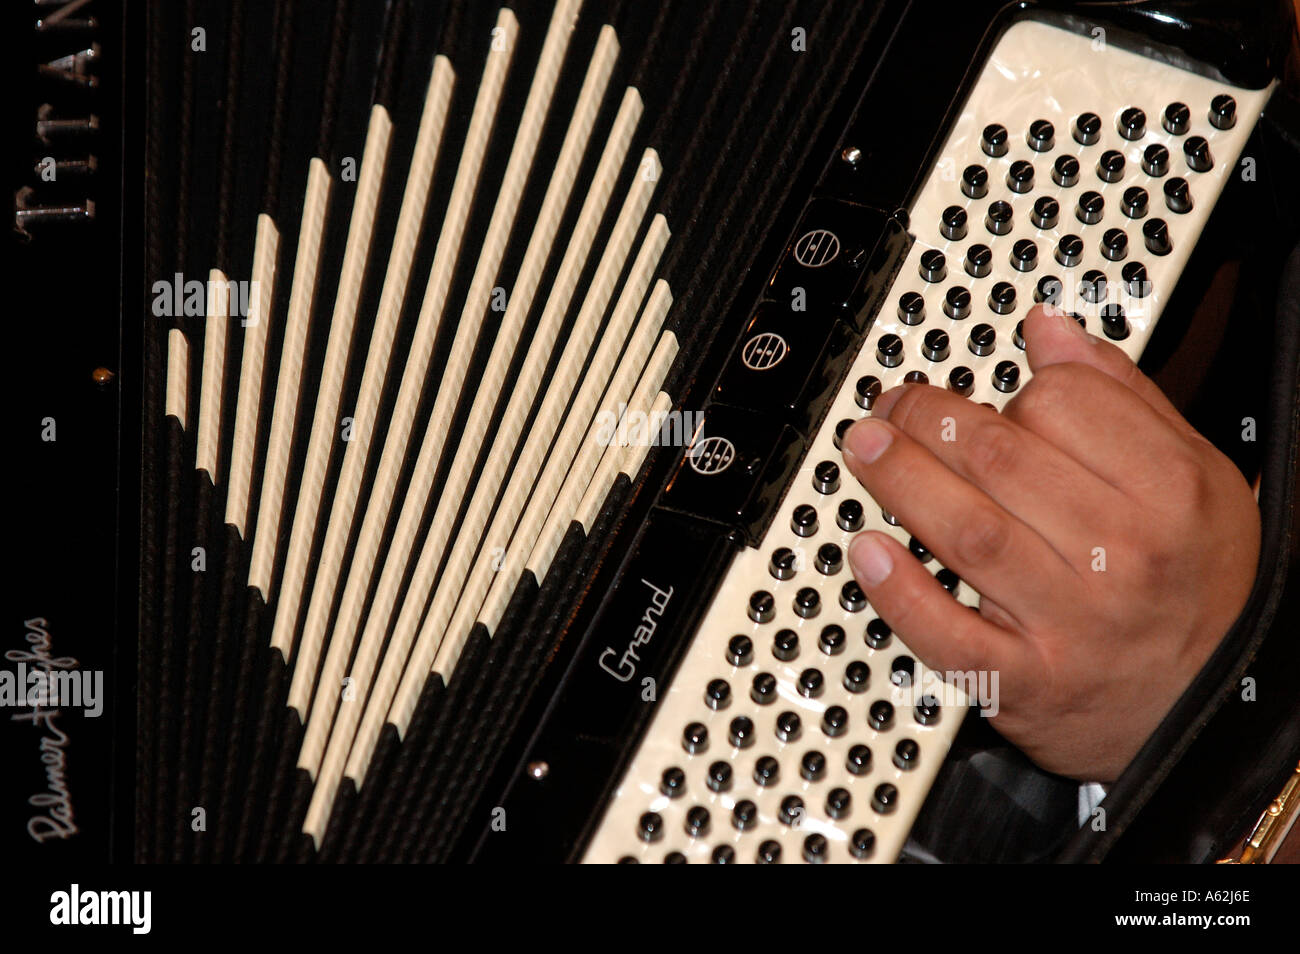 Akkordeon Piano Akkordeon-Musik Musikinstrument Hintergrund Hand spielen  Faltenbalg schließen sich Stockfotografie - Alamy